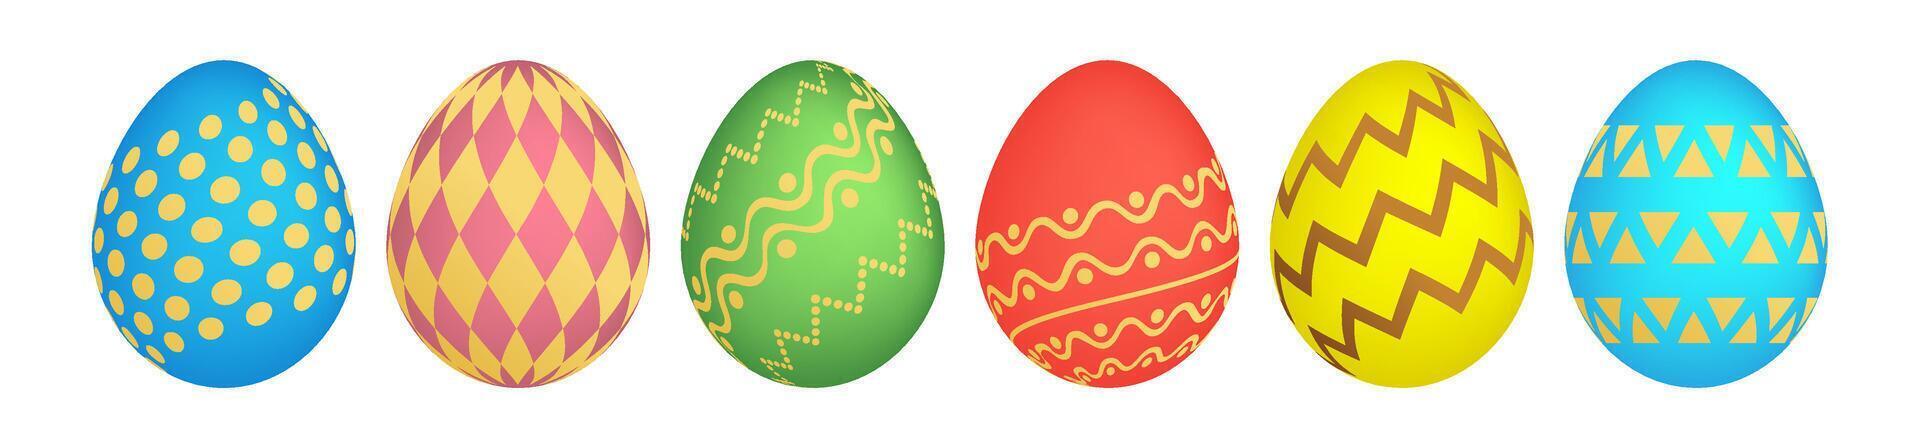 reeks van zes kleurrijk Pasen eieren vector